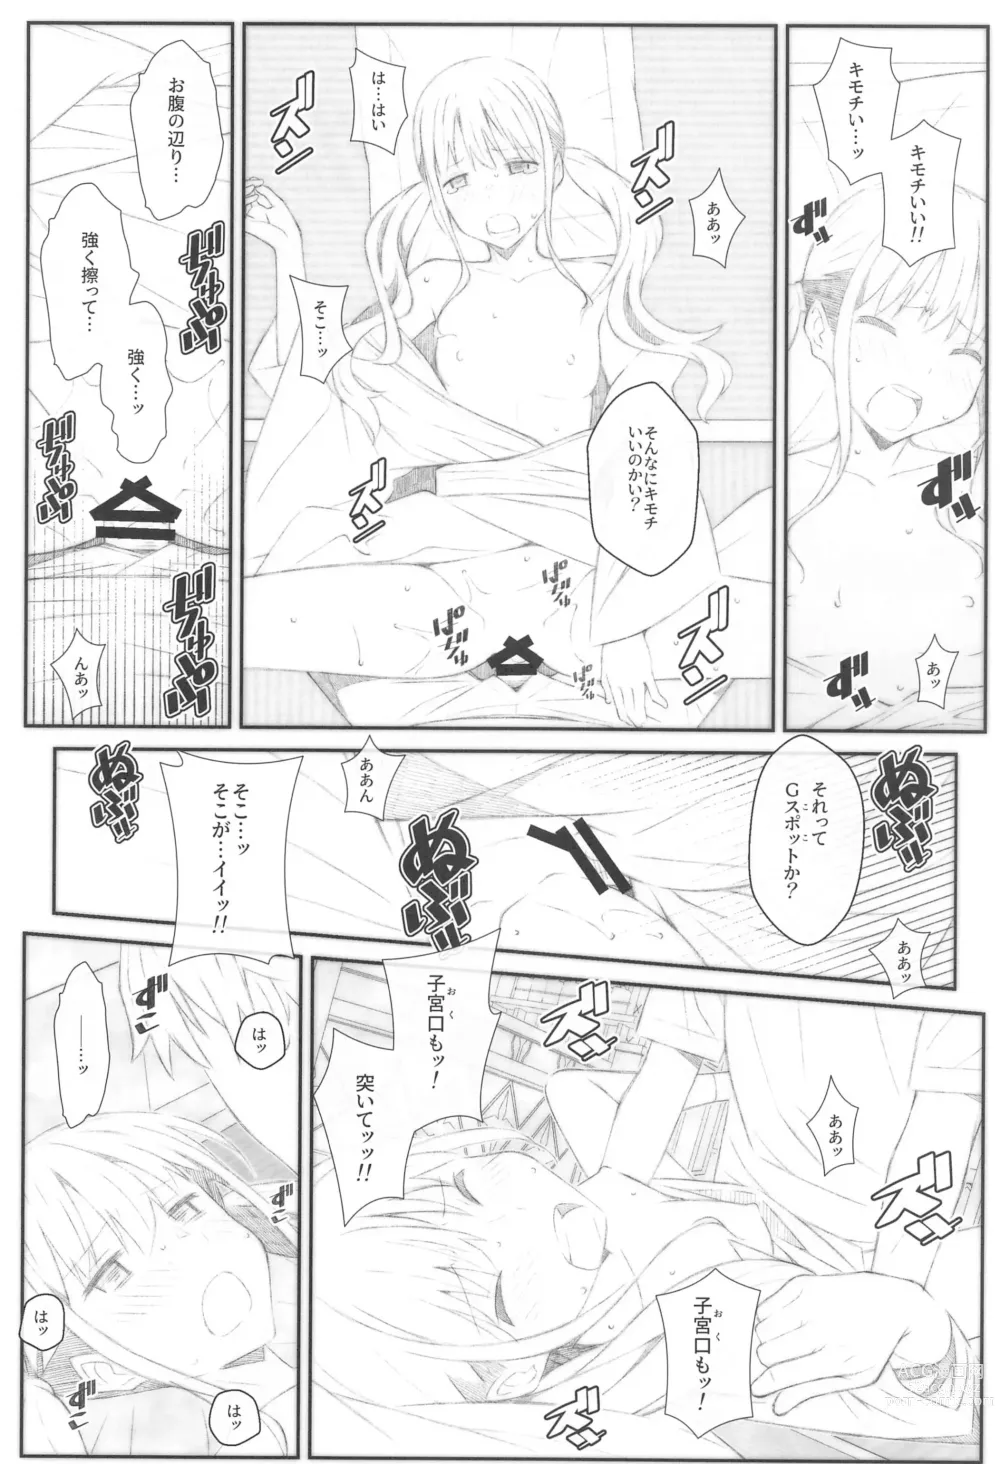 Page 15 of doujinshi TYPE-68b